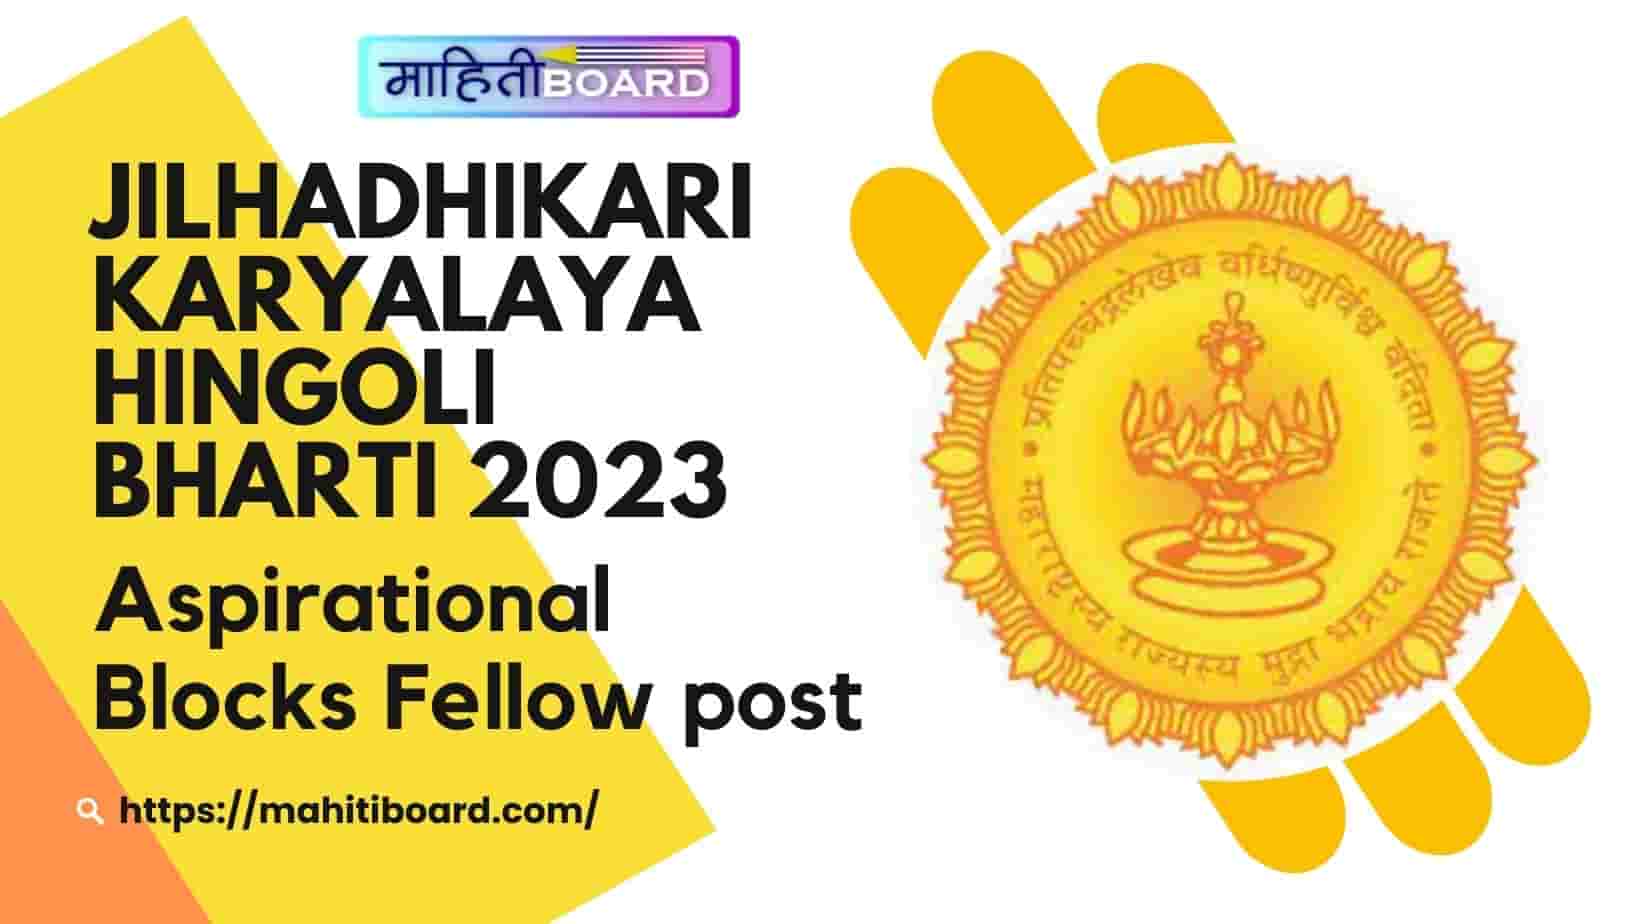 Jilhadhikari Karyalaya Hingoli Bharti 2023